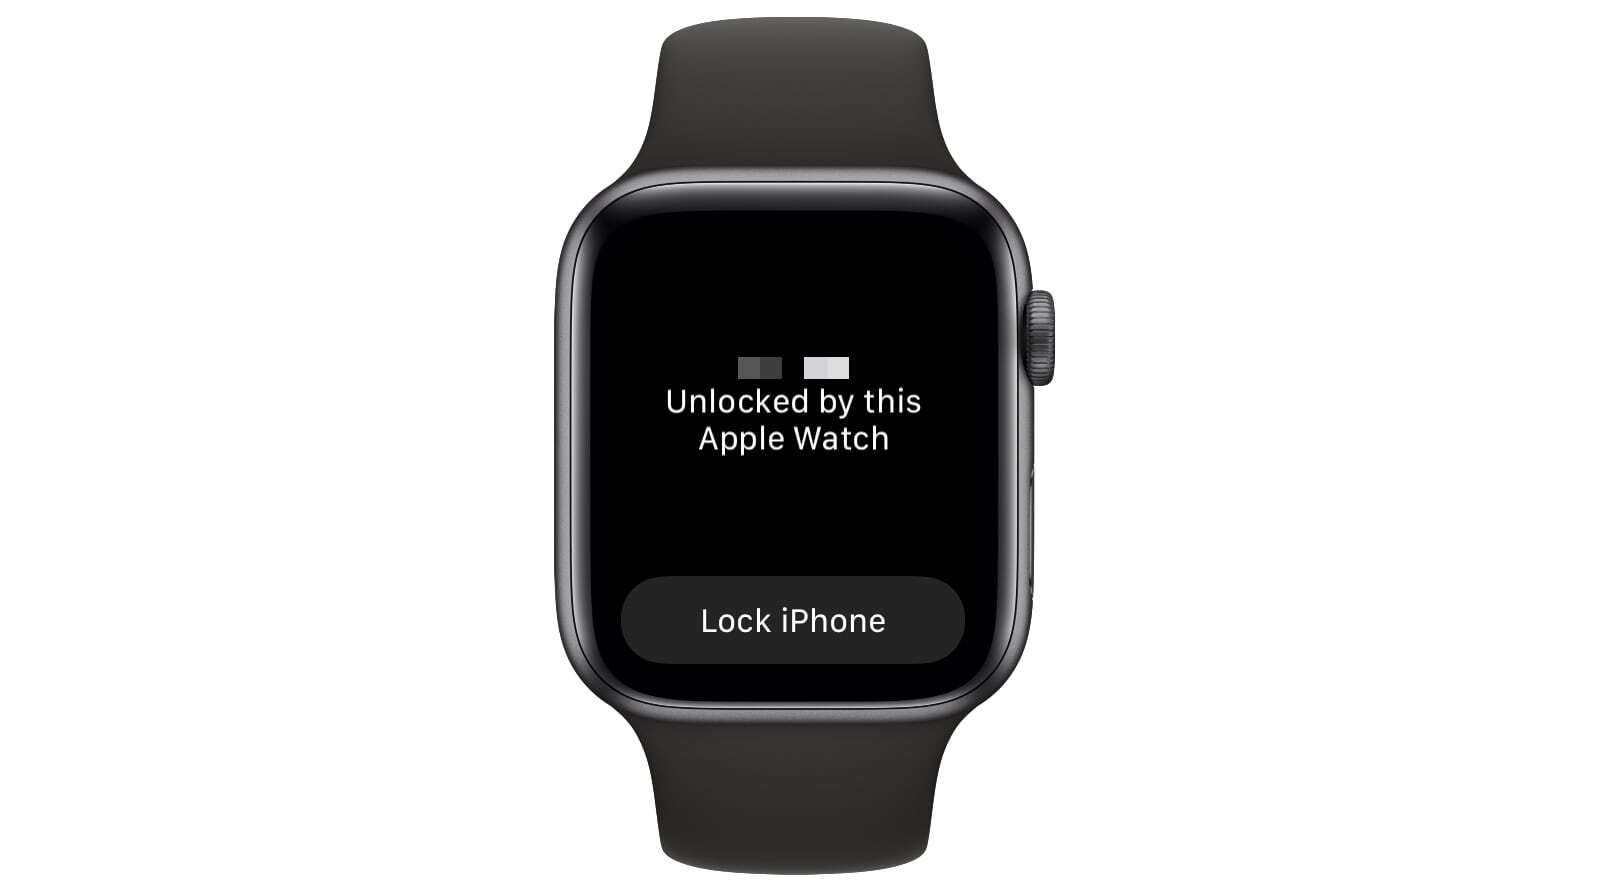 Apple Watch mostrando uma mensagem "Desbloqueado por este Apple Watch" e uma solicitação para bloquear um iPhone